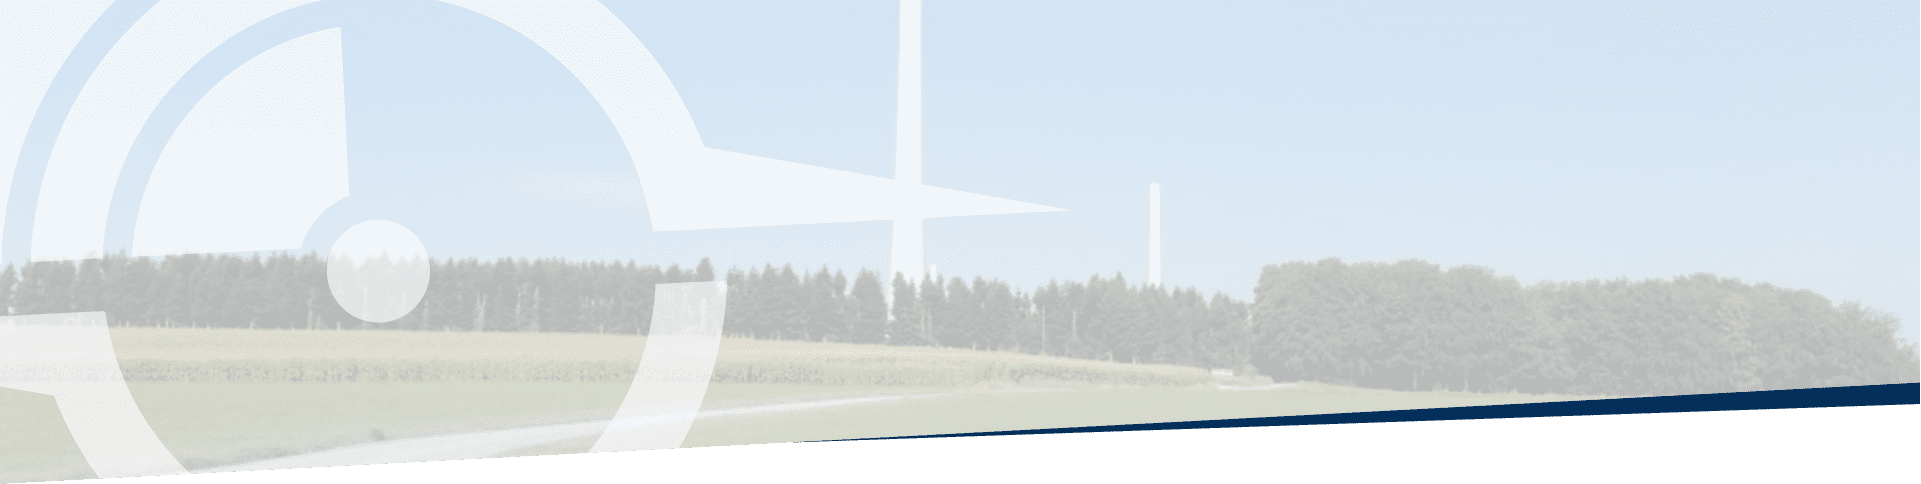 Siemens – Parc éolien